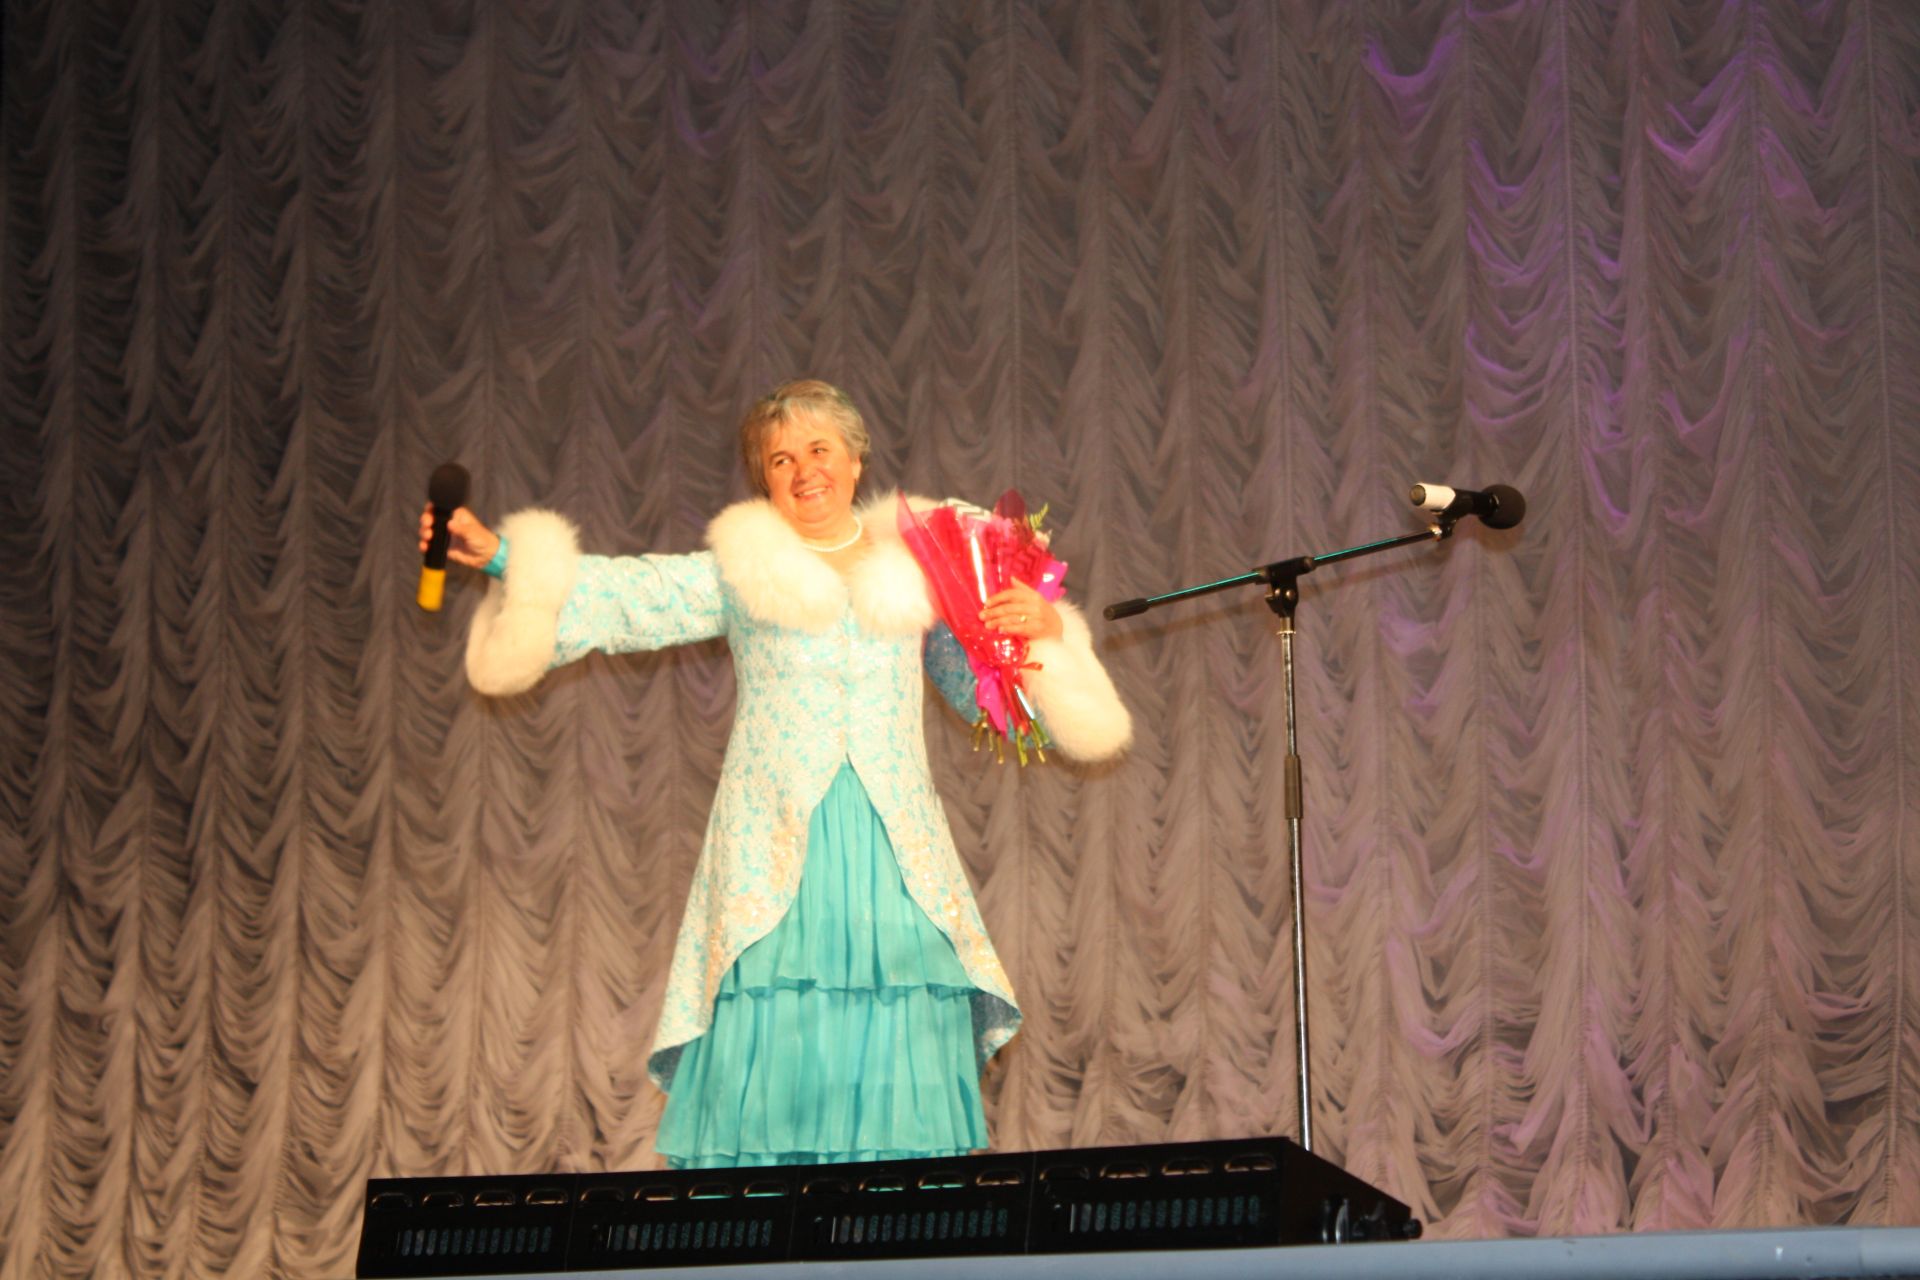 Впервые в Чистополе состоялся концерт лауреатов конкурса «Татар жыры» (фоторепортаж)